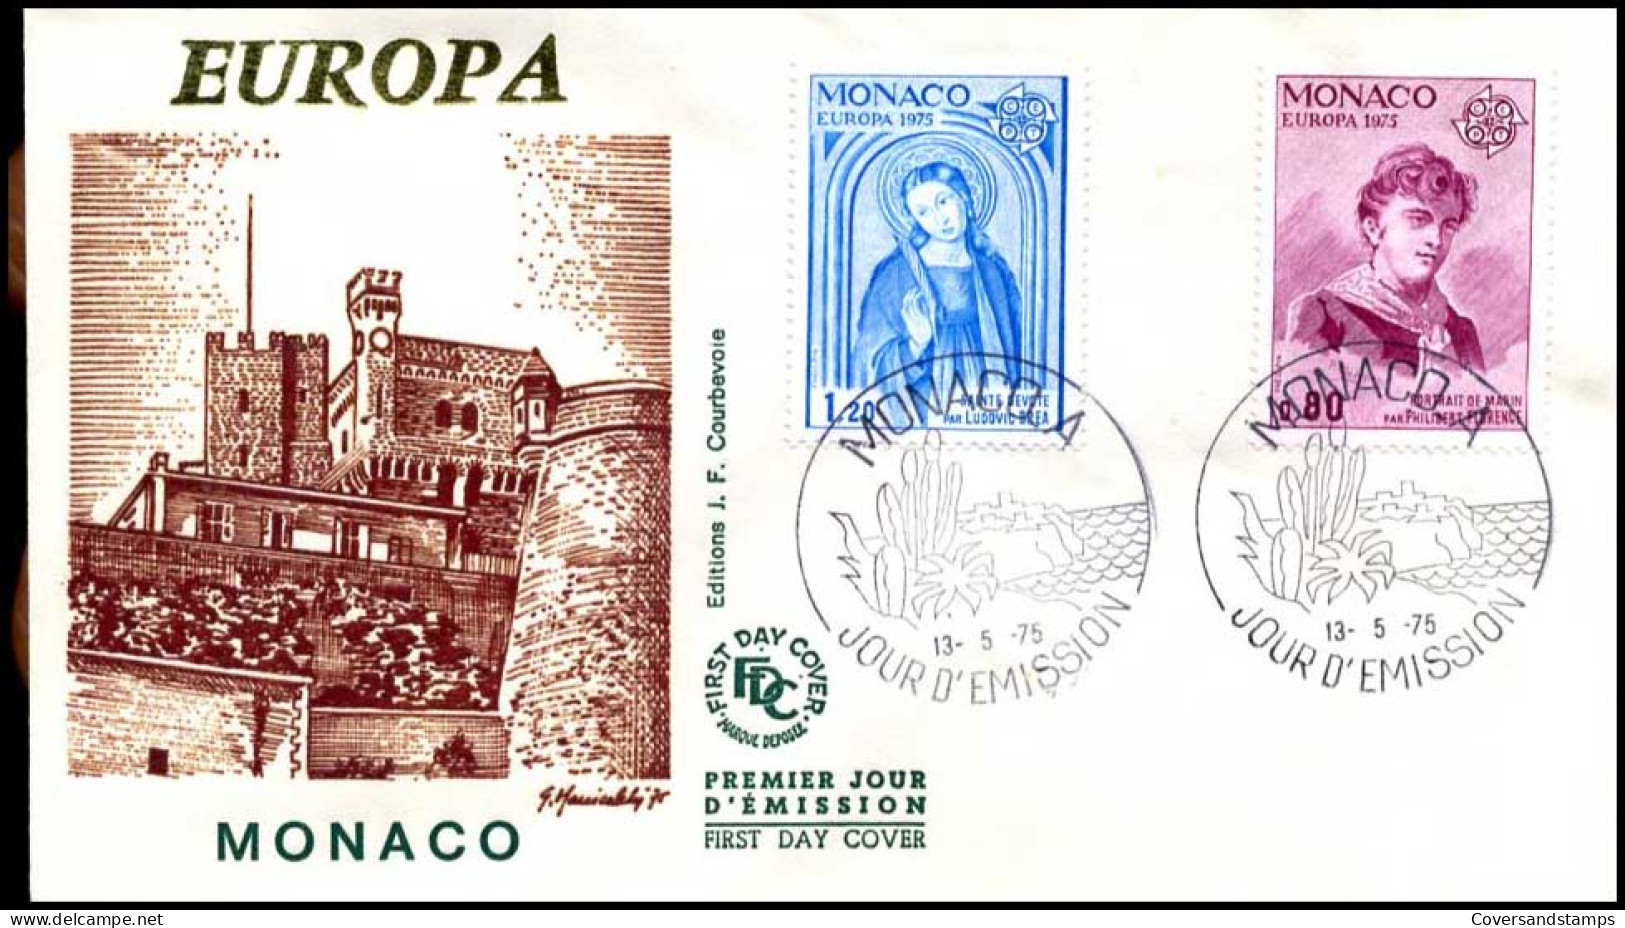  Monaco - FDC - Europa CEPT 1975 - 1975